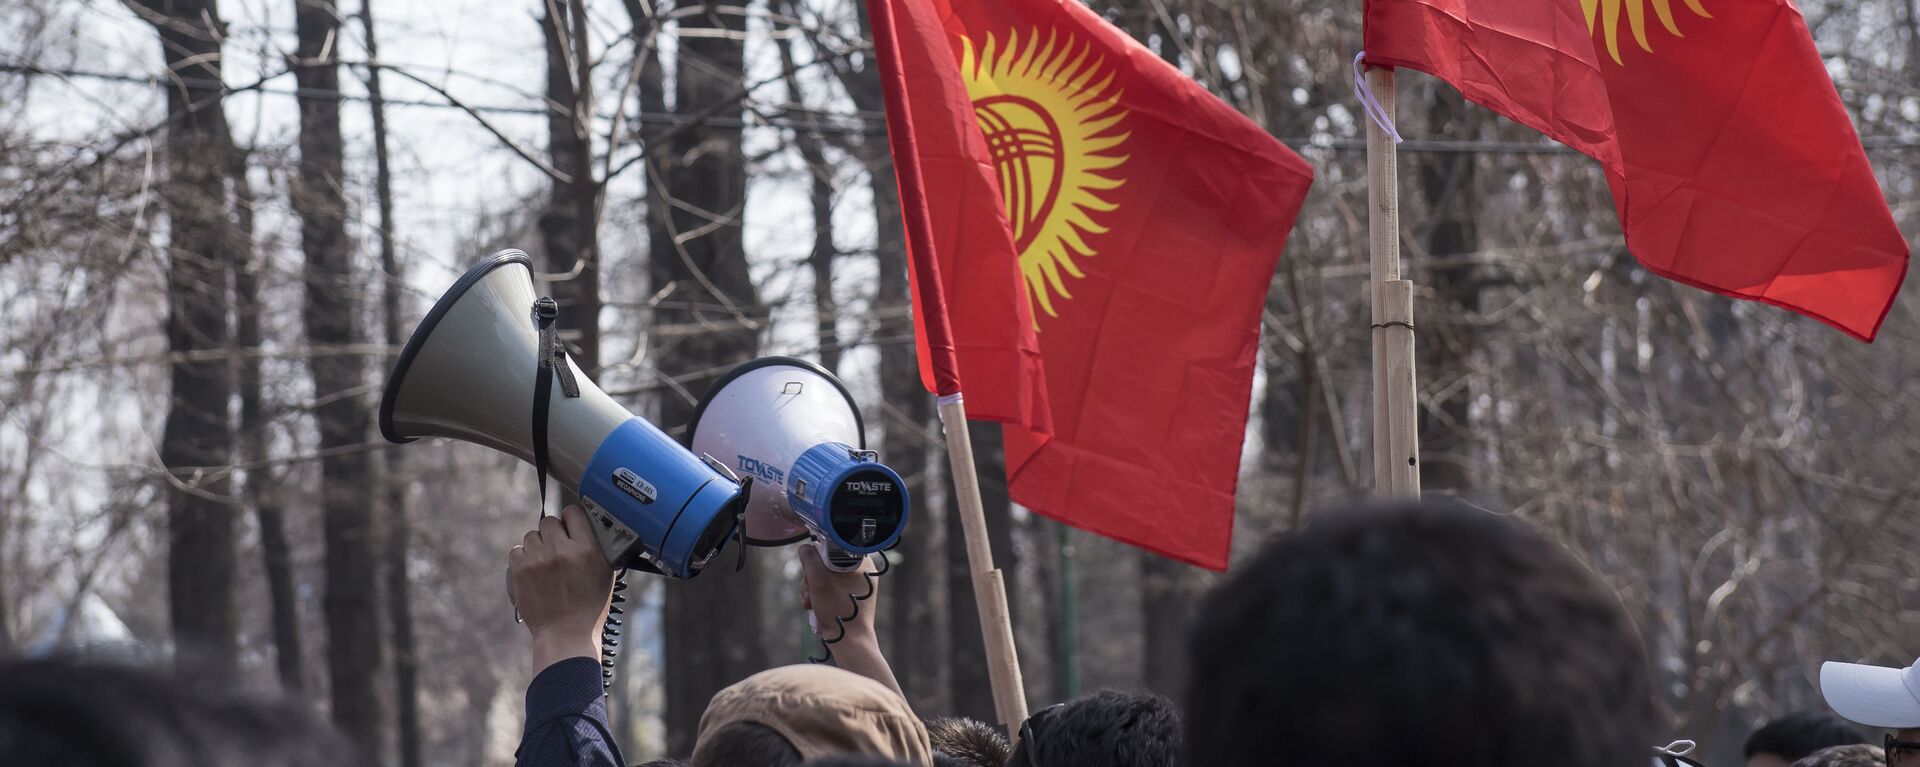 Участники митинга в Бишкеке. Архивное фото - Sputnik Кыргызстан, 1920, 05.03.2021